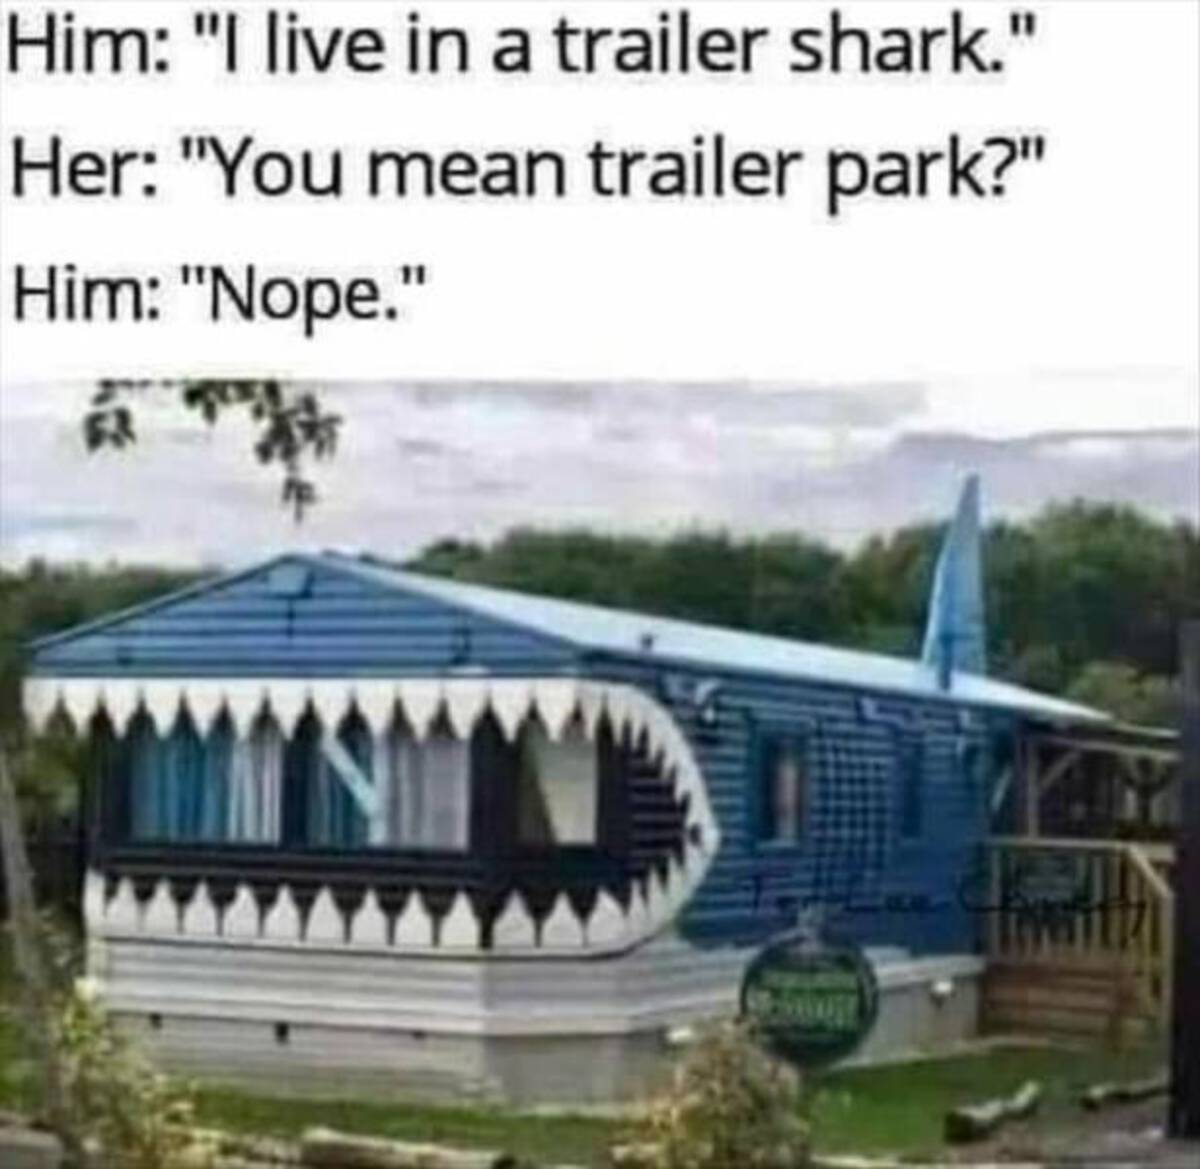 trailer shark - Him "I live in a trailer shark." Her "You mean trailer park?" Him "Nope."